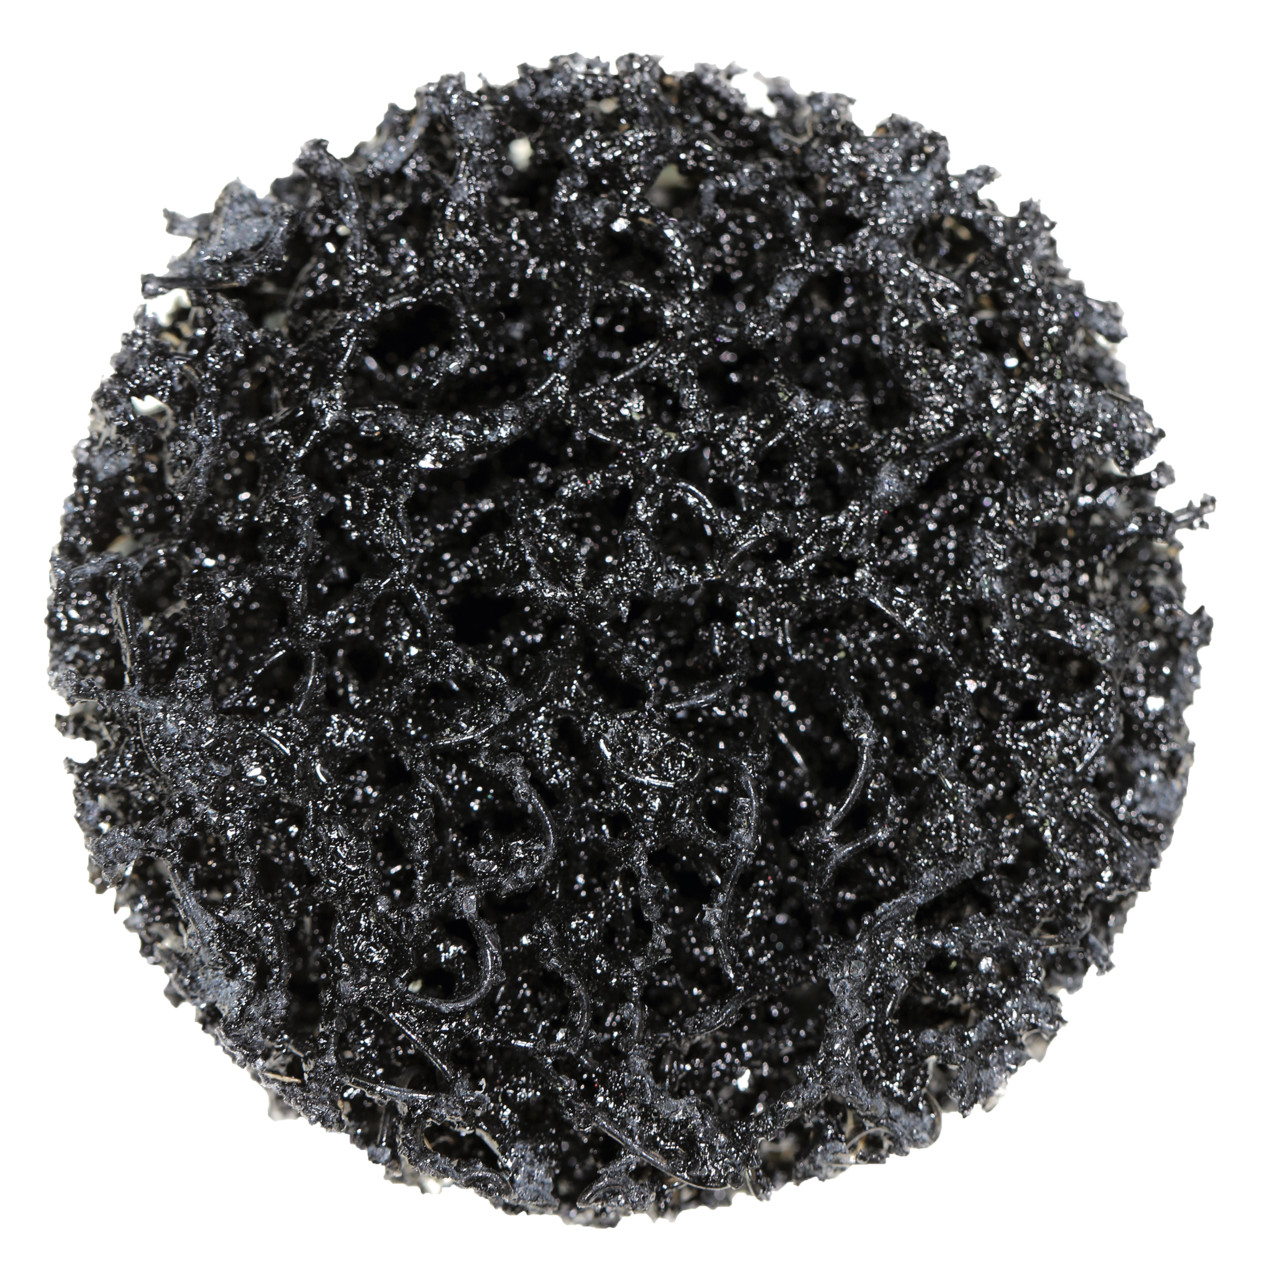 Tyrolit Grove reinigingsschijf afmeting 75xR Voor staal, roestvrij staal en PVC, A EX. GROB, vorm: QDISC, Art. 34206232